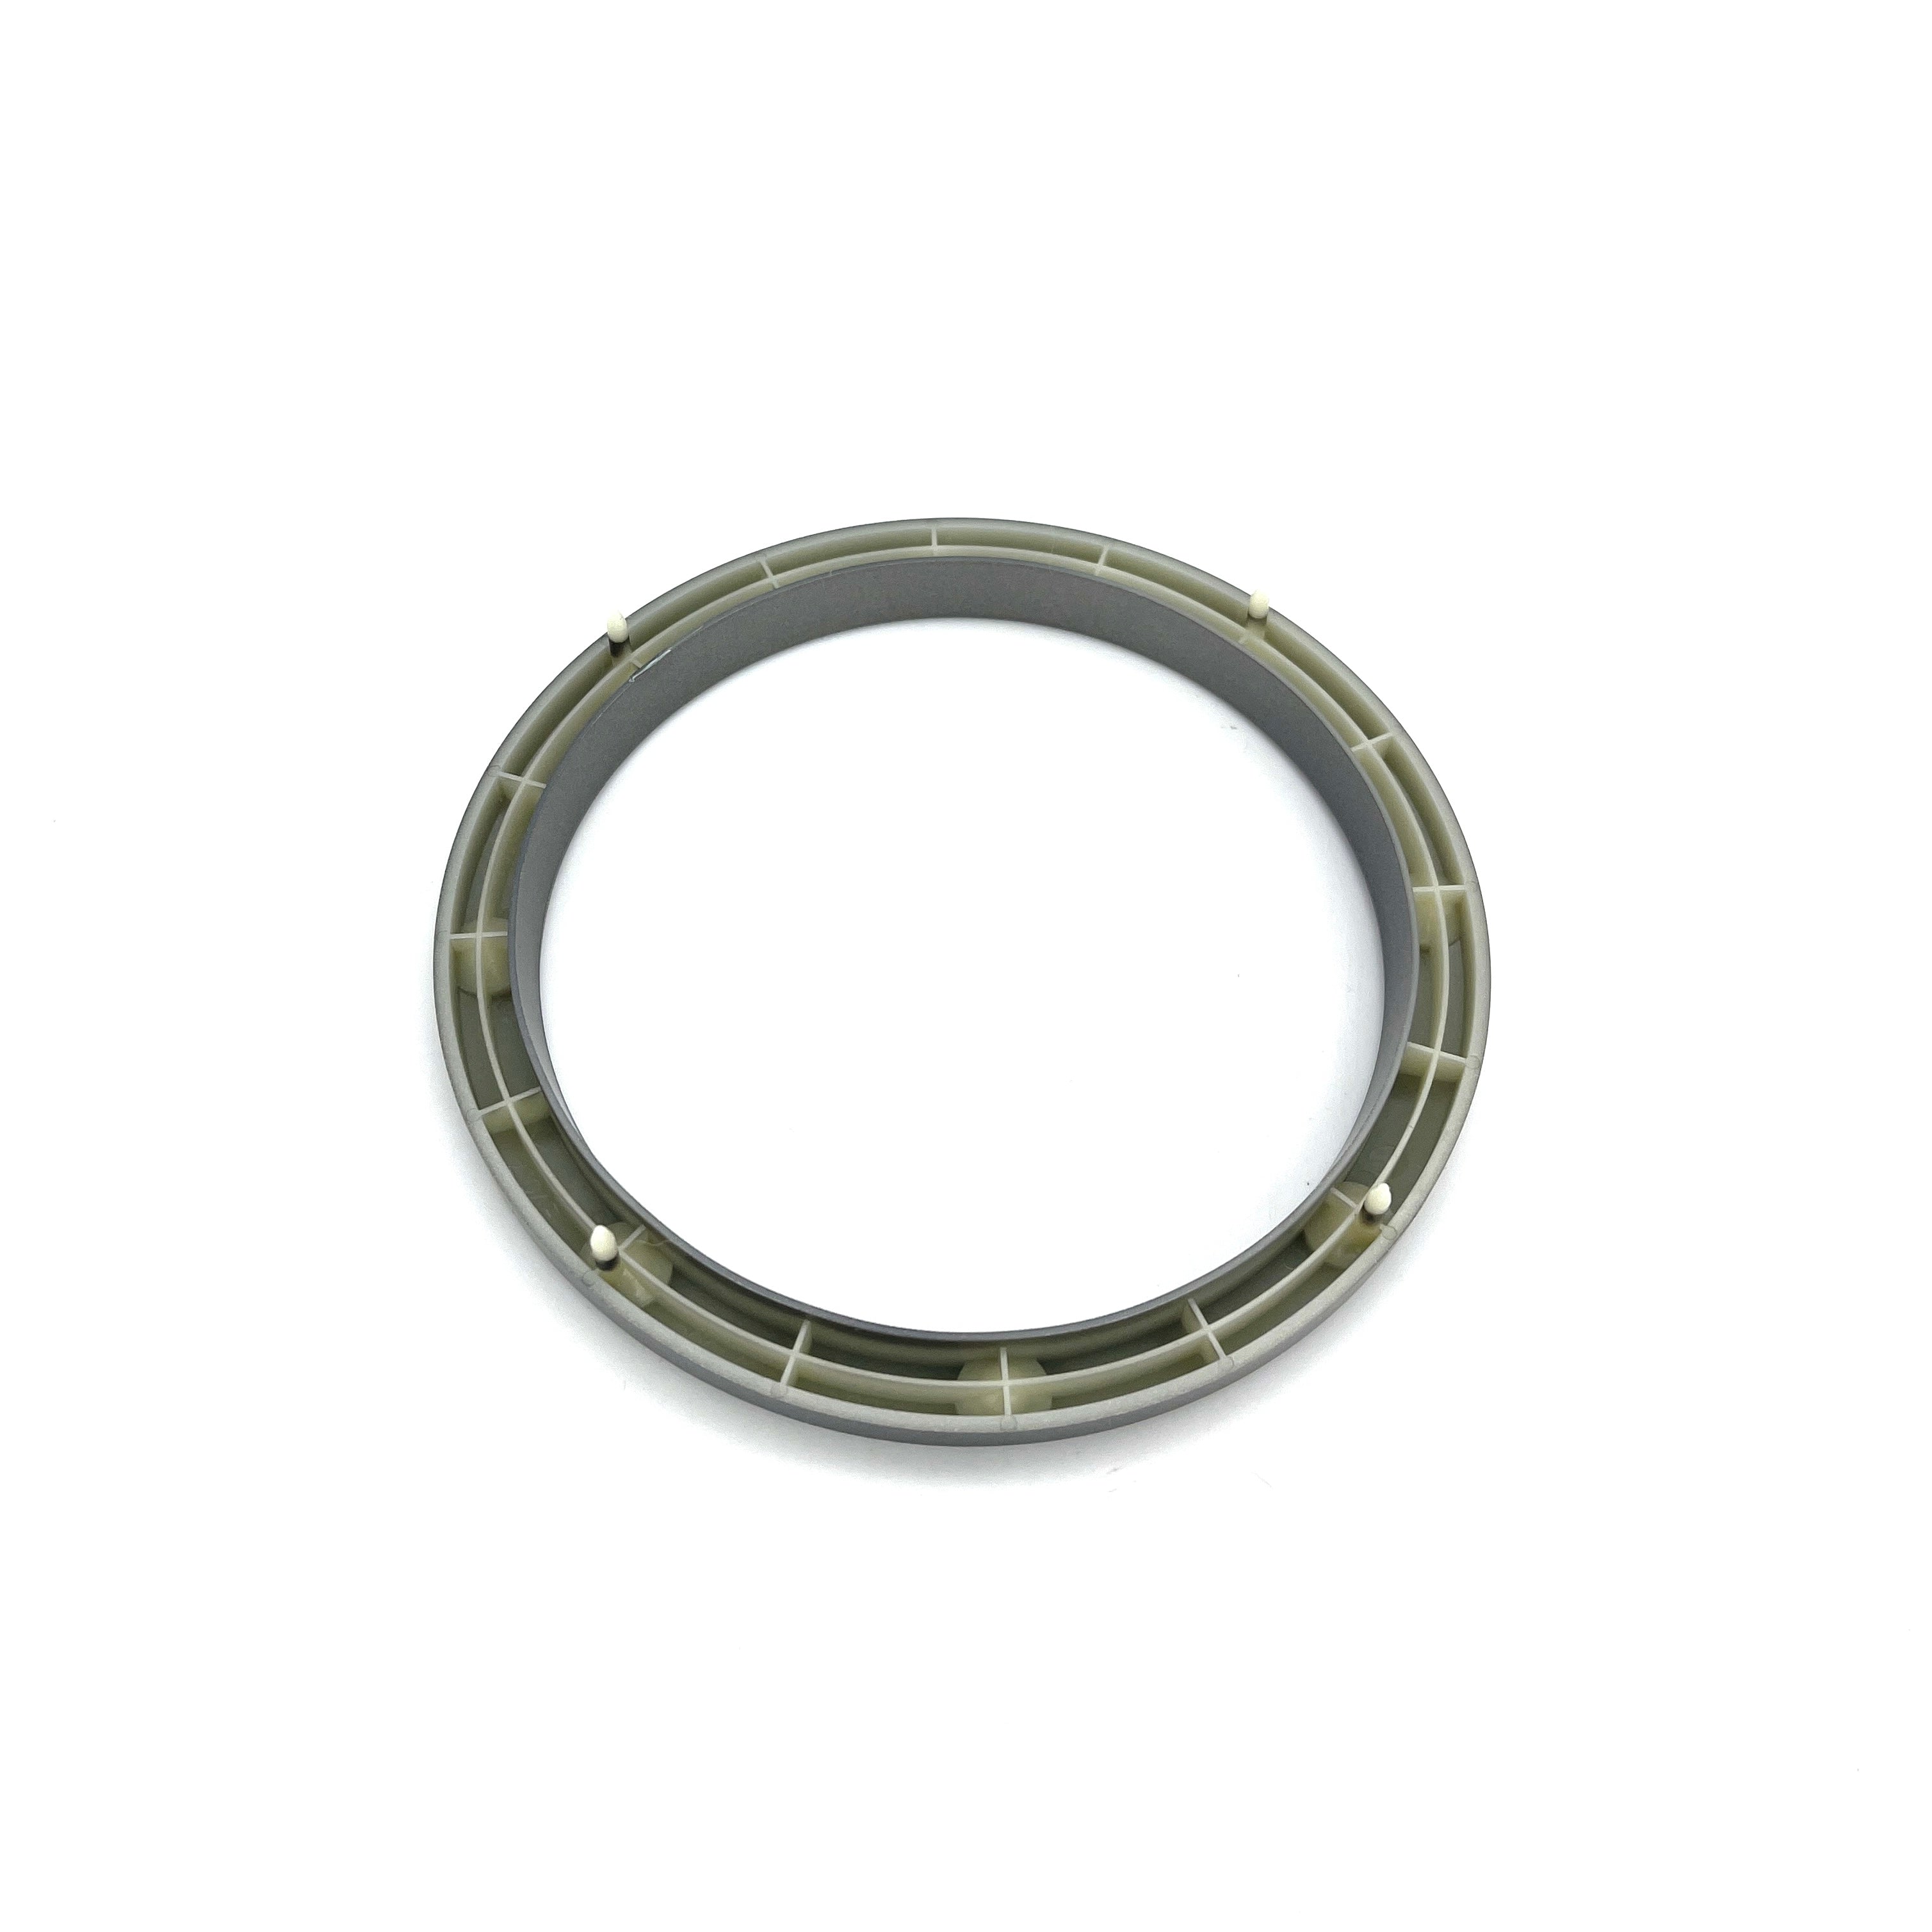 Mitsubishi OEM Shifter Garnish Ring (Evo 7/8/9)